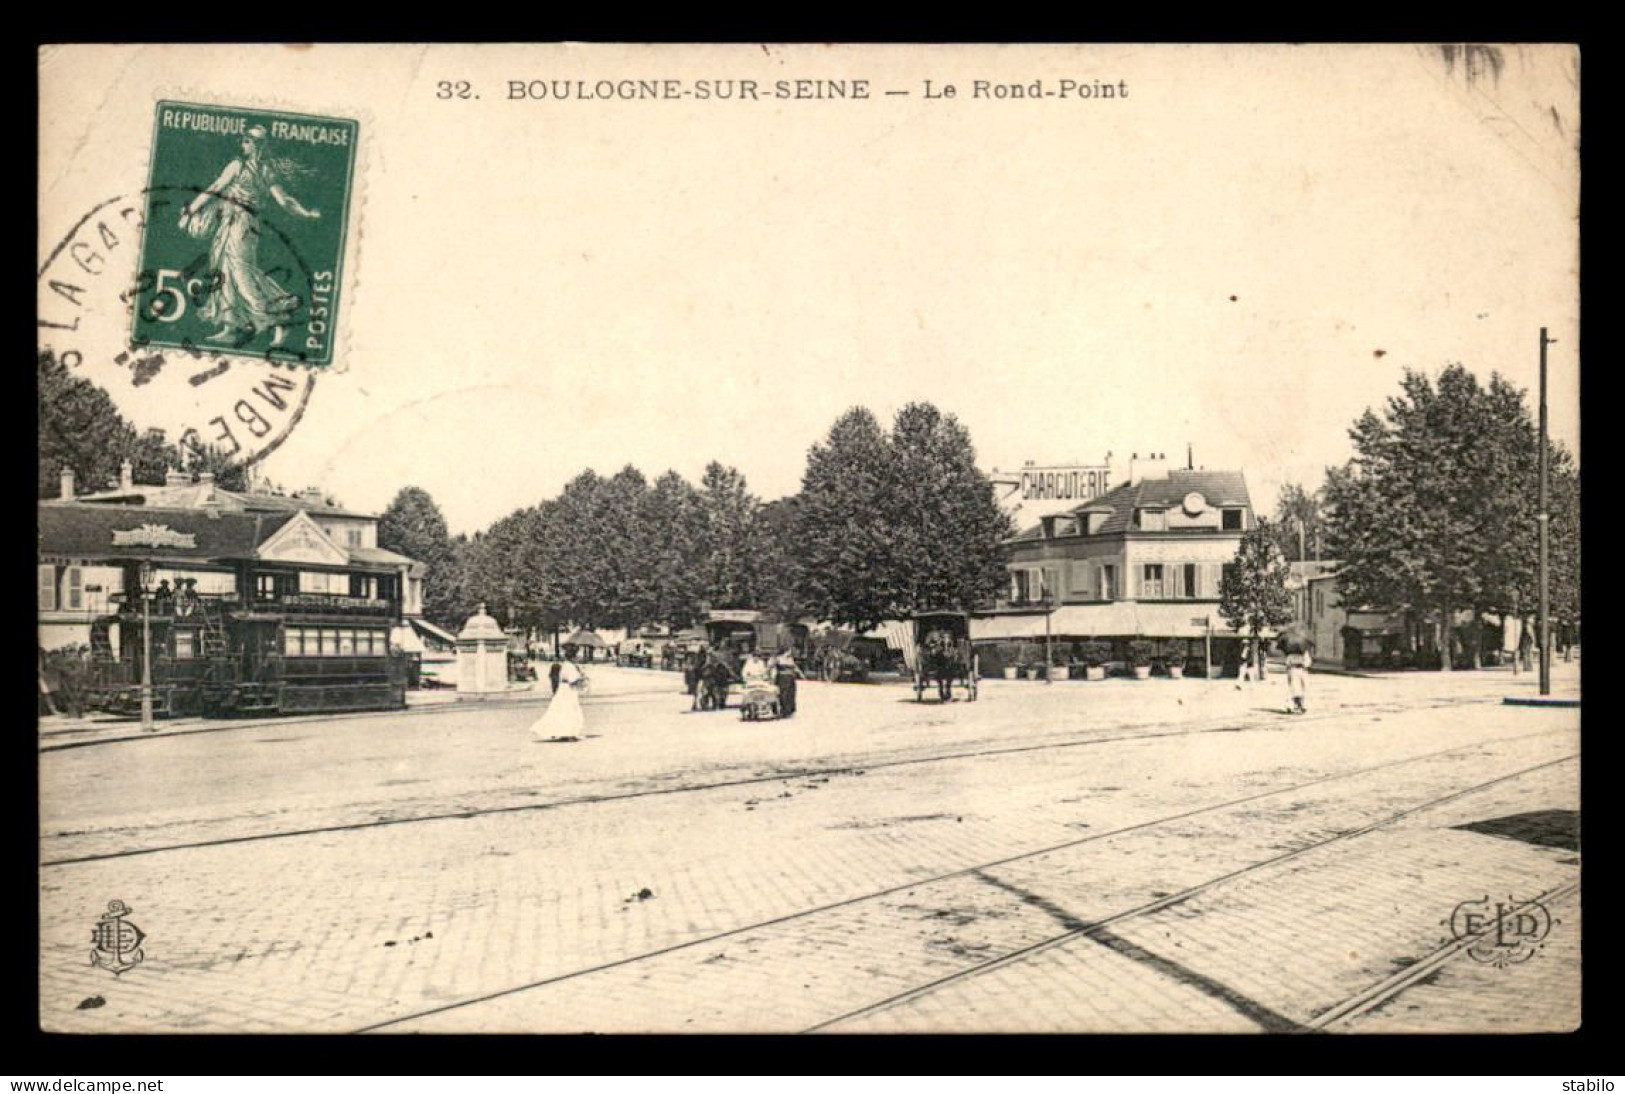 92 - BOULOGNE-SUR-SEINE - LE ROND-POINT - TRAMWAY - Boulogne Billancourt